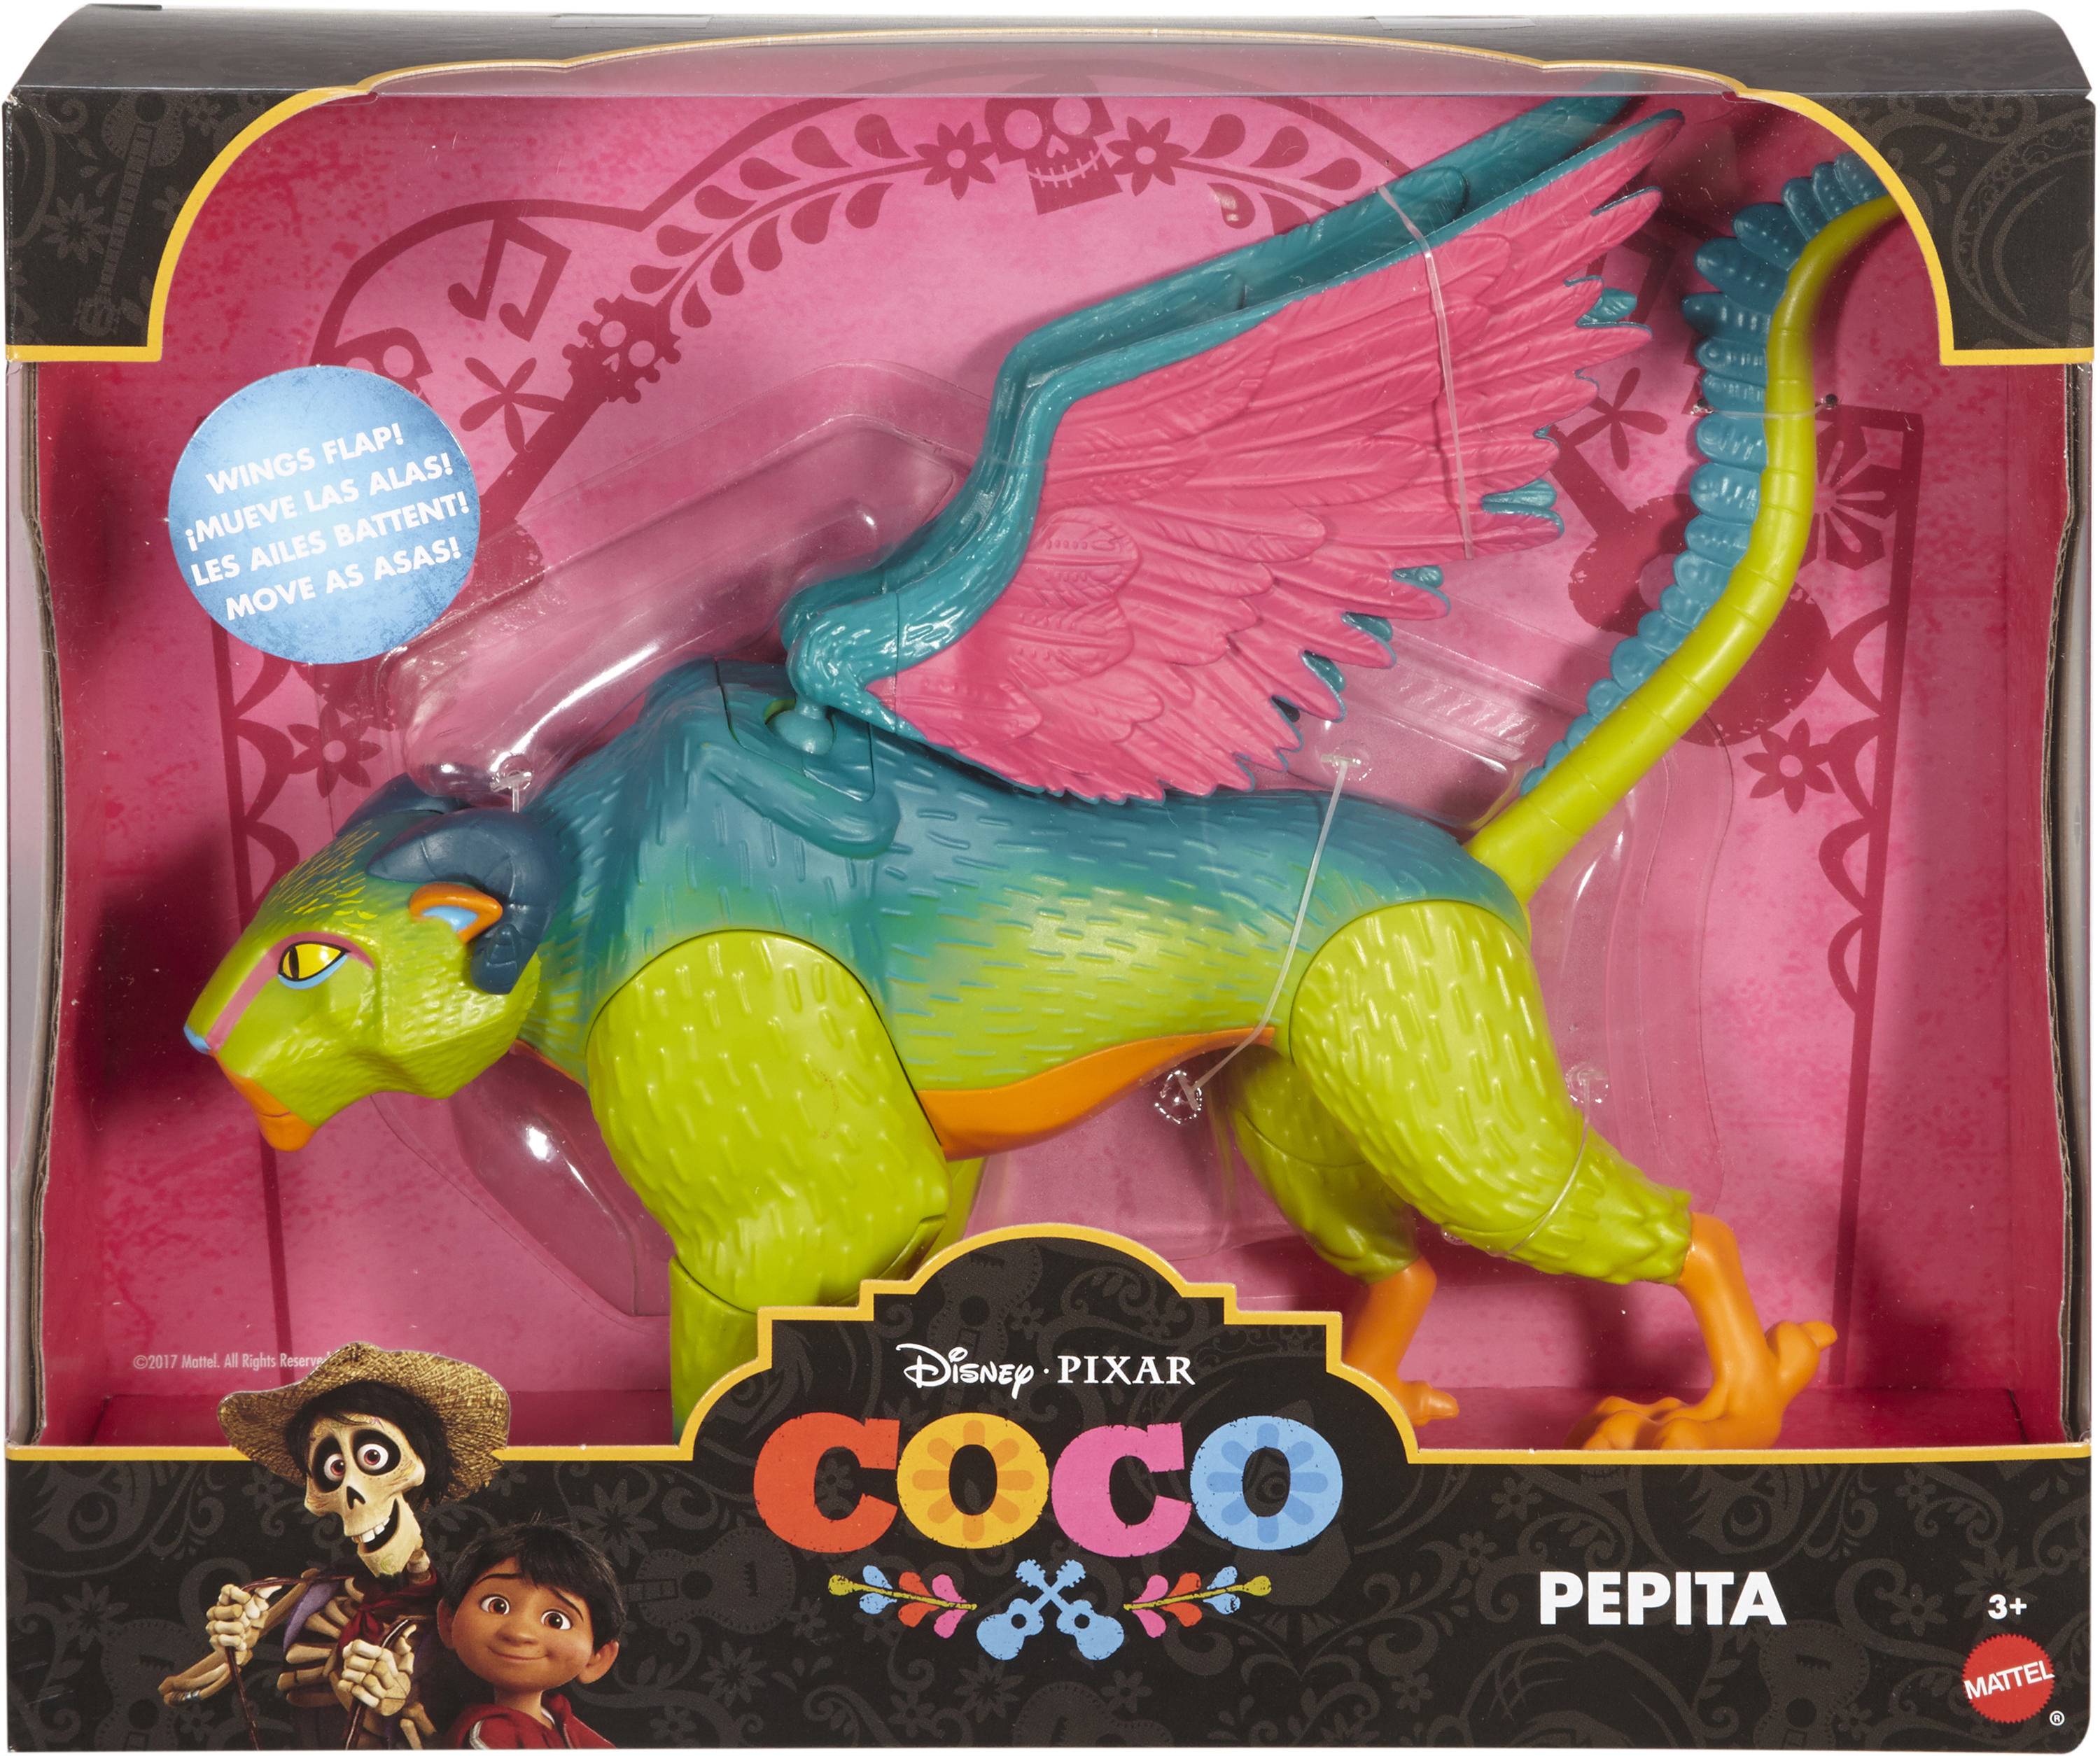 Оригинал Disney Pixar Coco Action Figure - Pepita. 